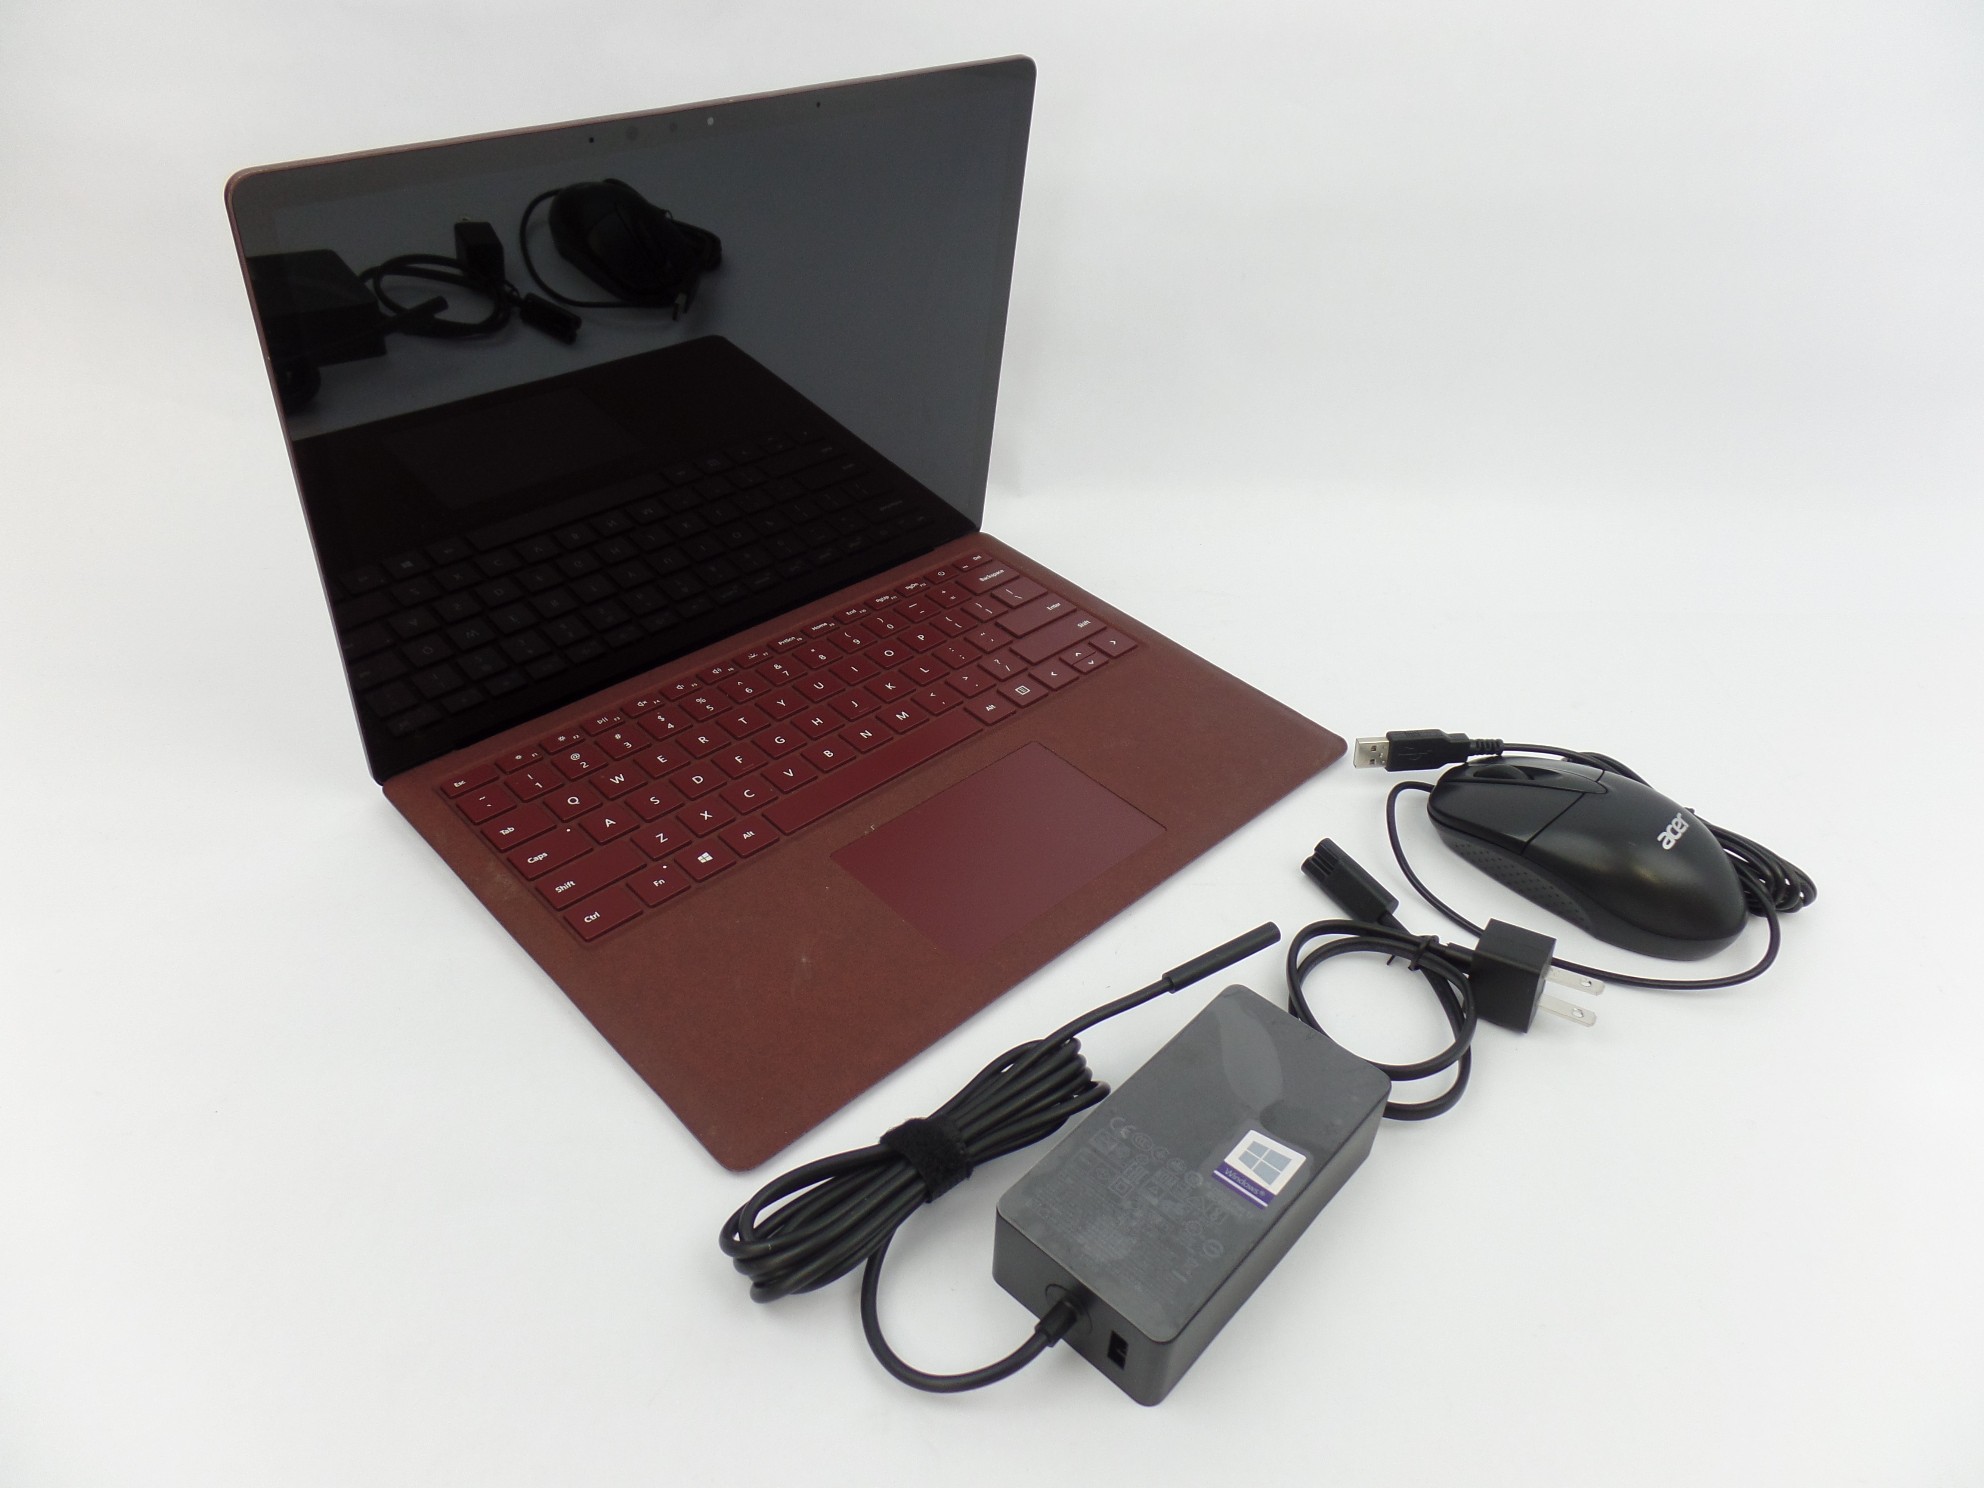 Microsoft Surface Laptop 1769 13.5" i5-7200U 2.5Hz 8GB 256GB W10P Burgundy U2